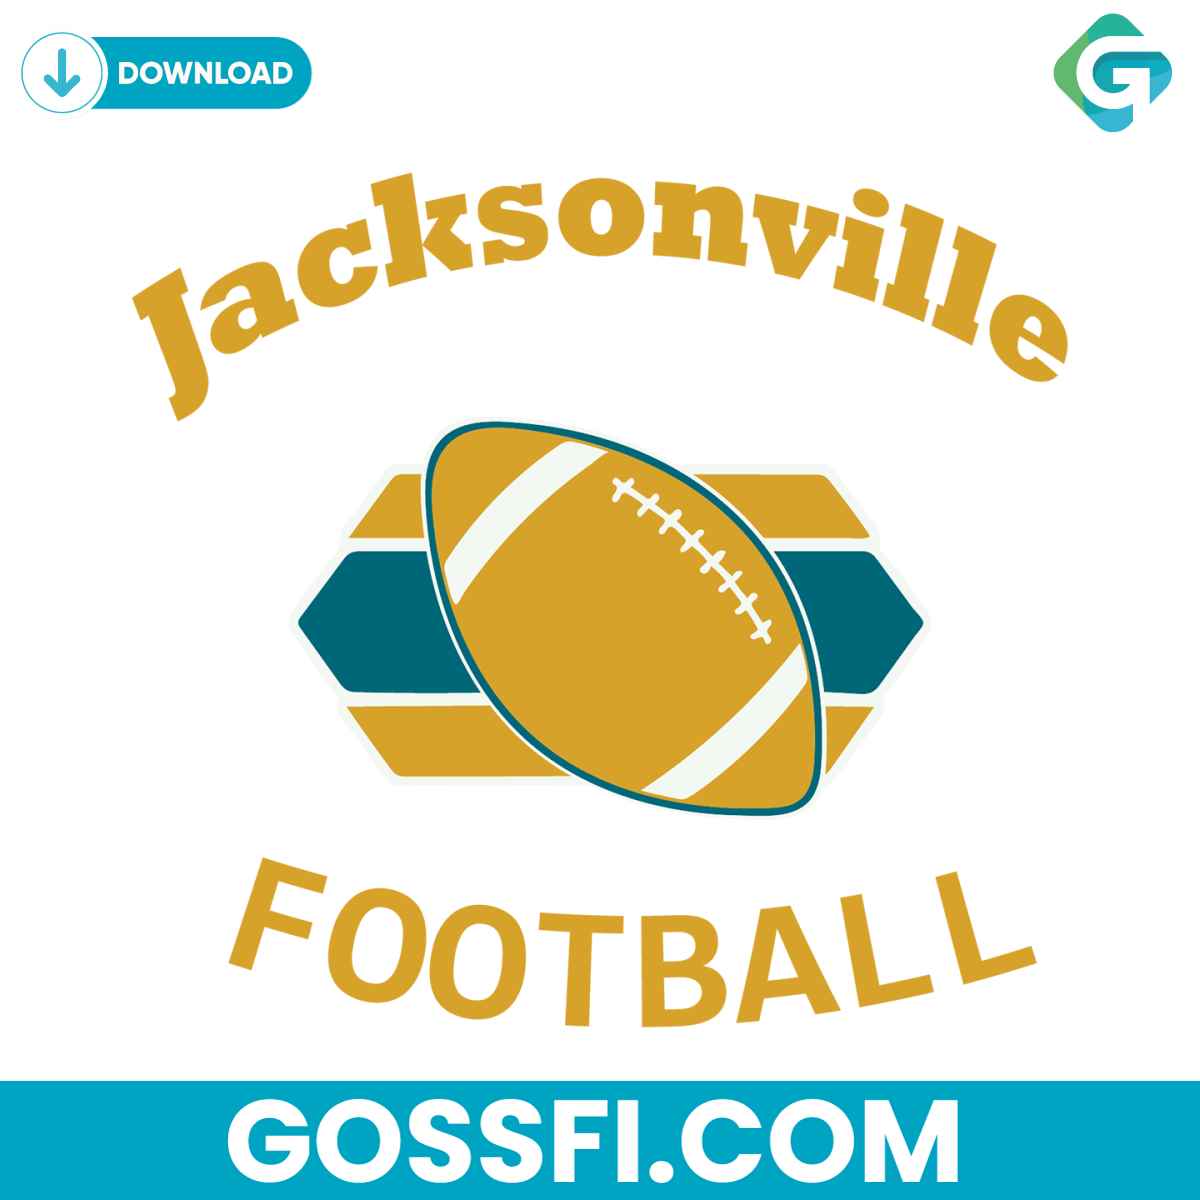 jacksonville-jaguars-football-svg-digital-download